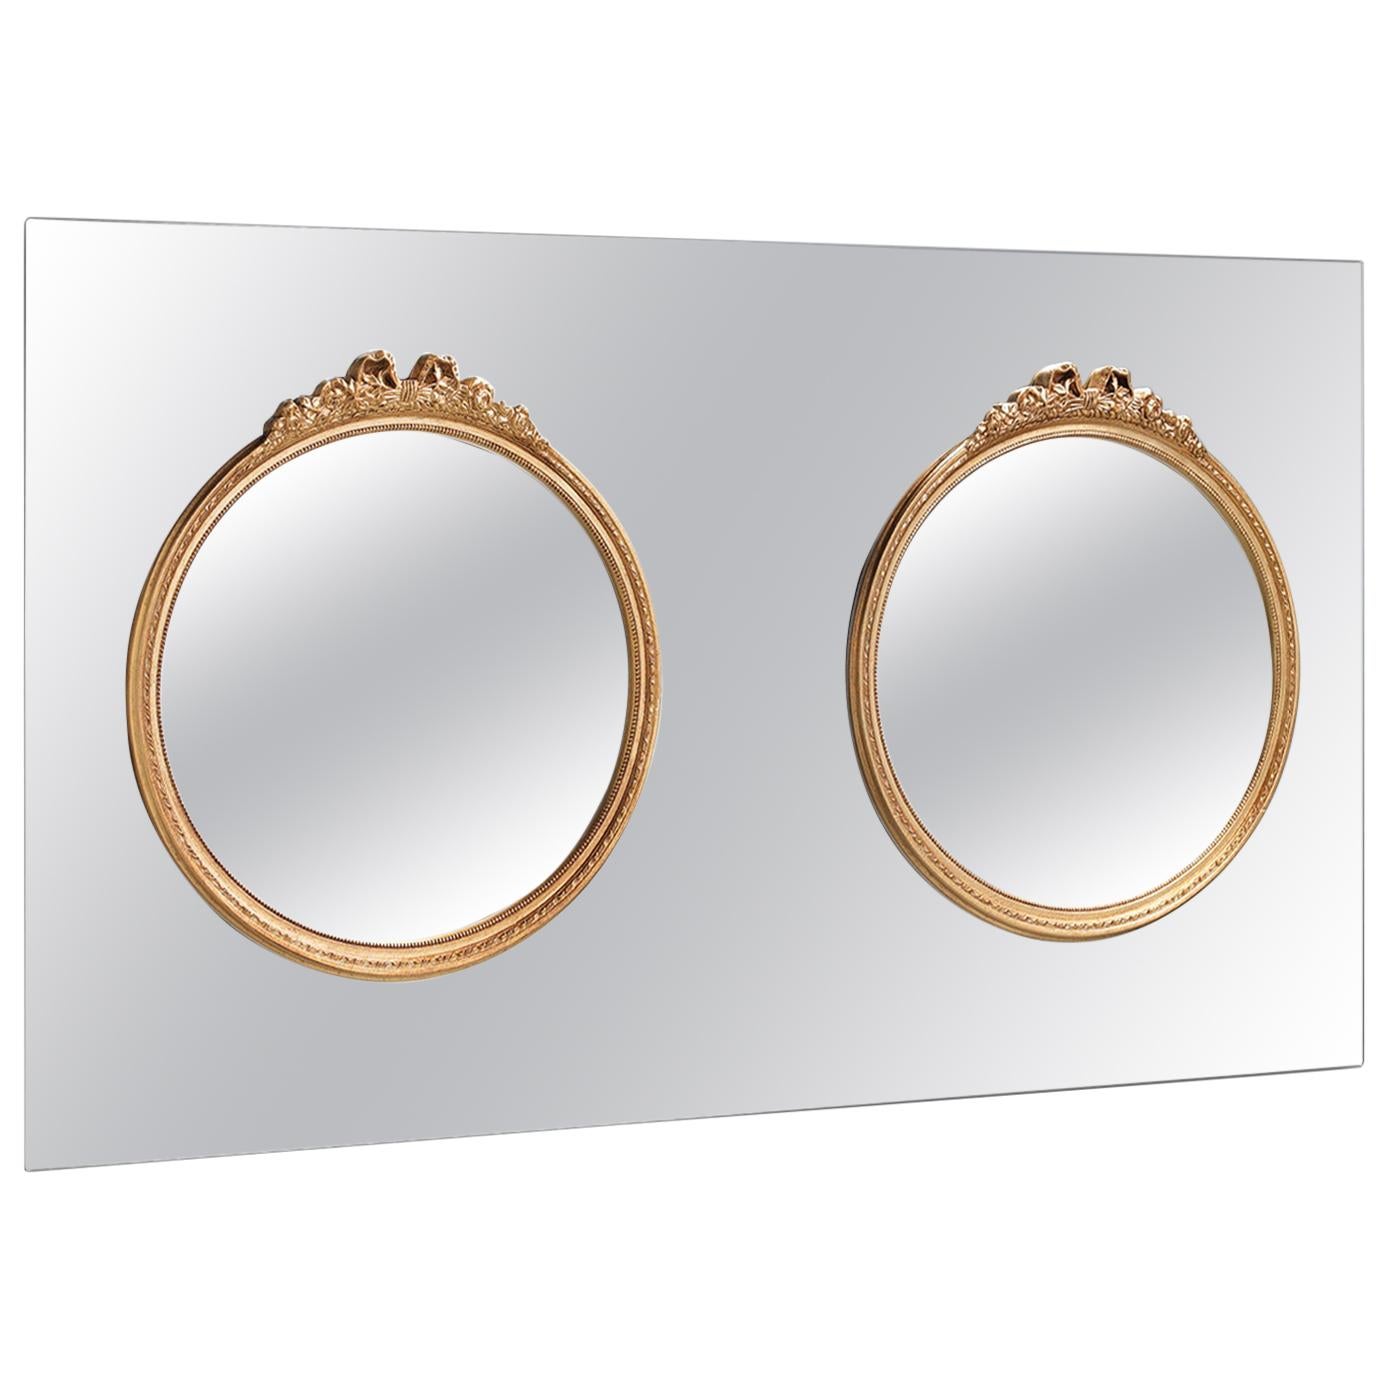 Wandspiegel mit Holzrahmen, der direkt auf die Spiegelfläche montiert wird. Runder Rahmen im Barockstil, erhältlich in Goldausführung.
 